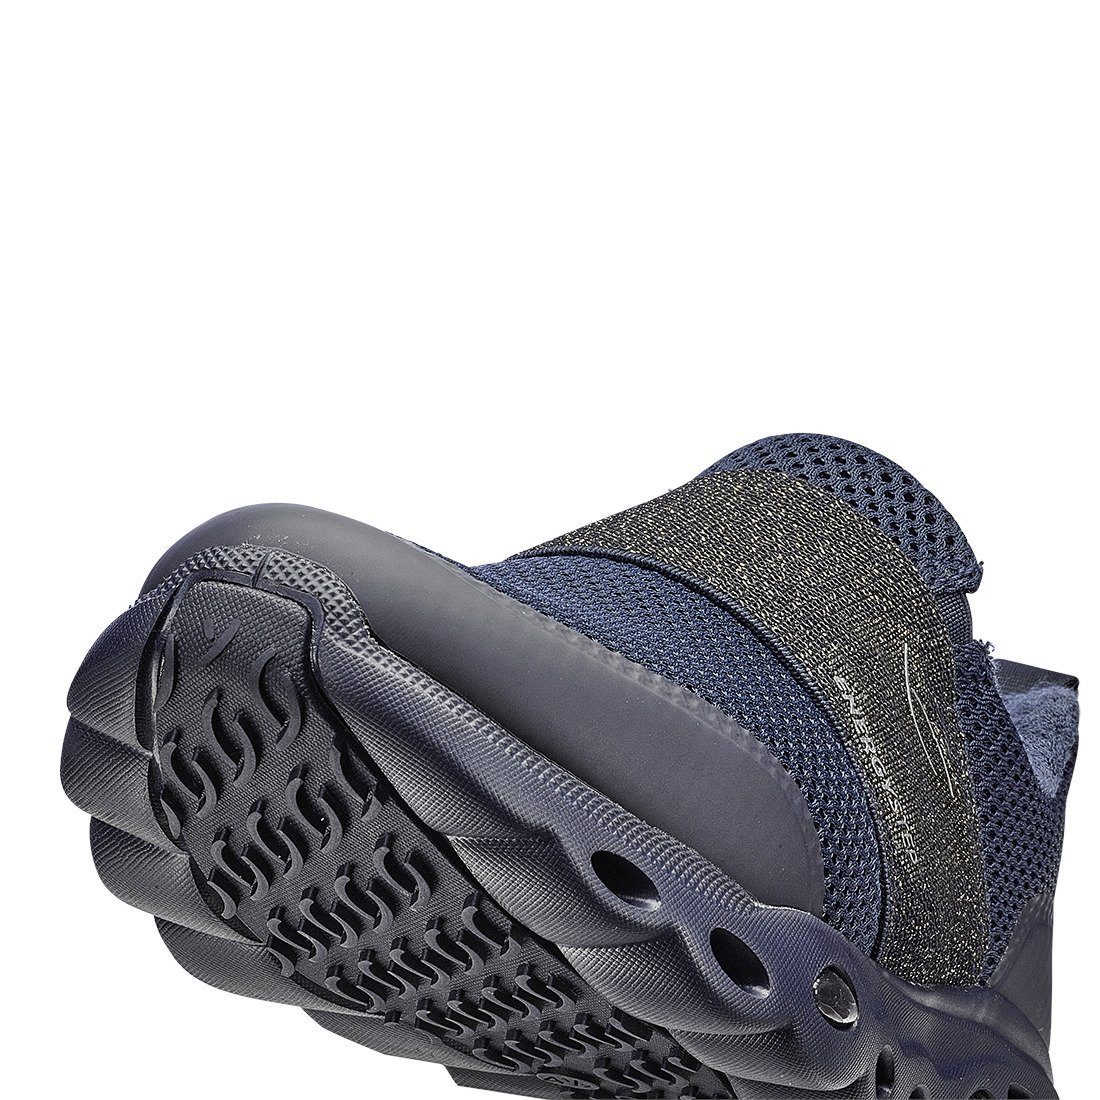 Malibu Schuhe, - Damen Slipper Textil Ara Ara Slipper 043657 blau